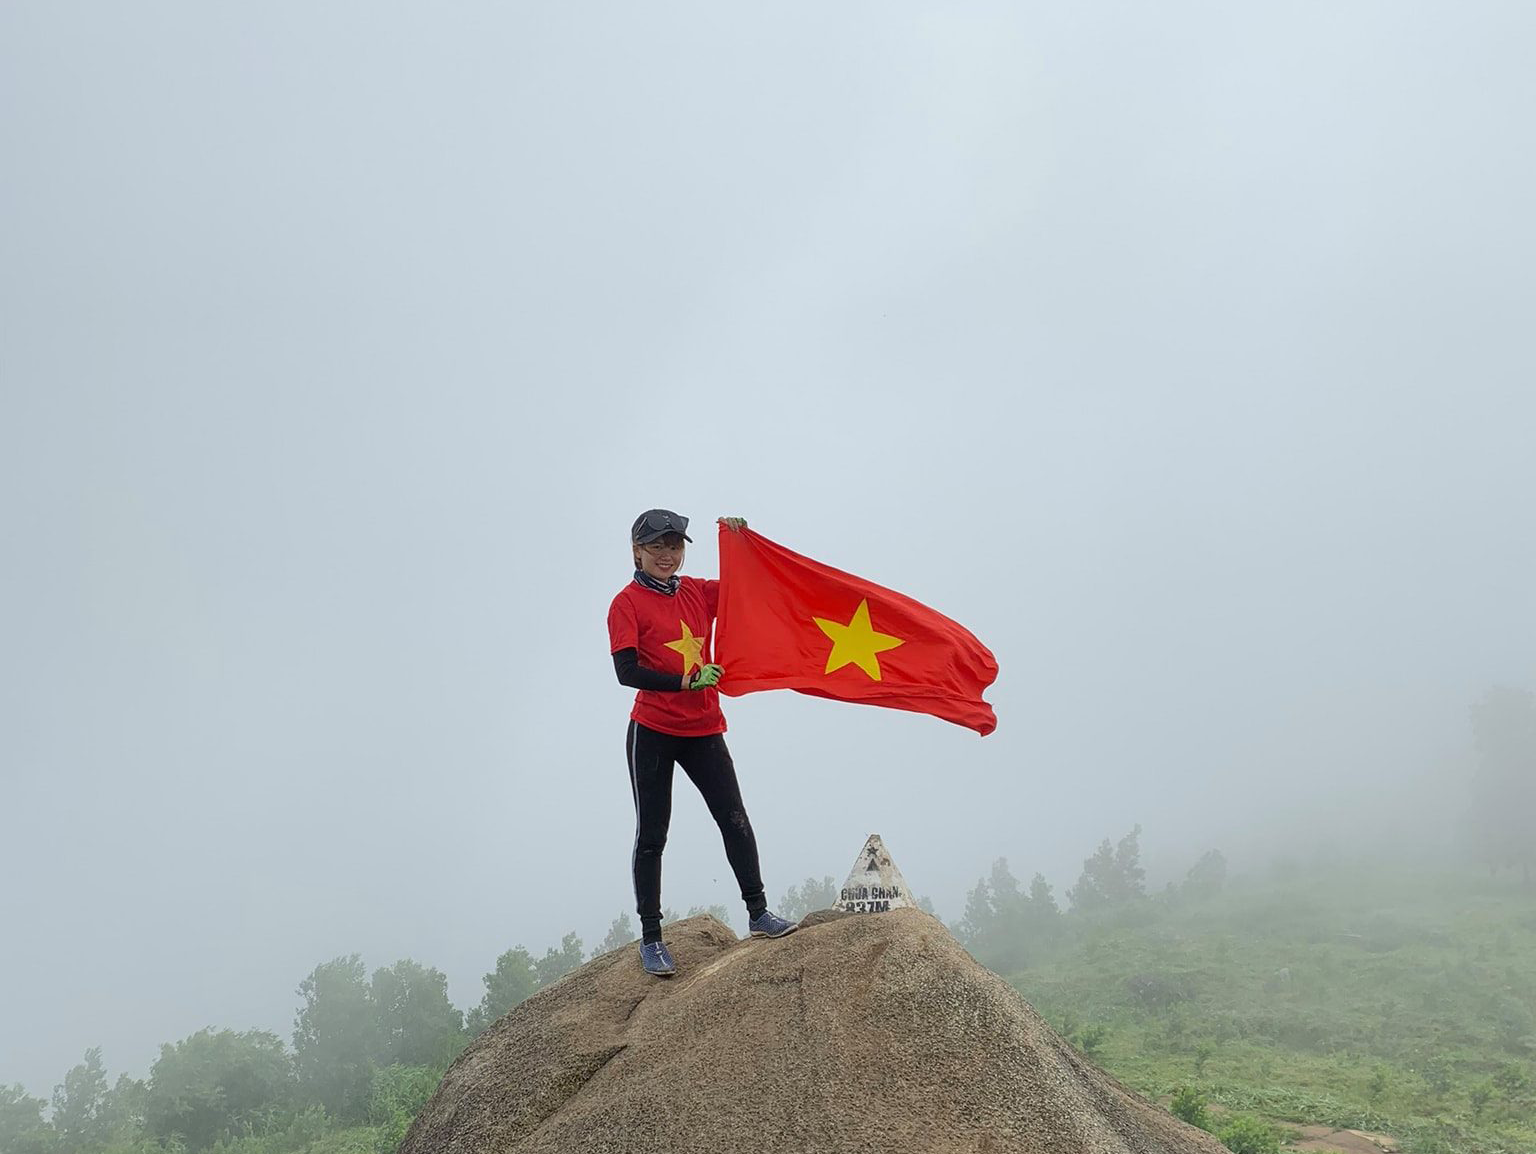 Cắm Trại Núi Chứa Chan Hành Trình Khám Phá Thiên Nhiên Xanh